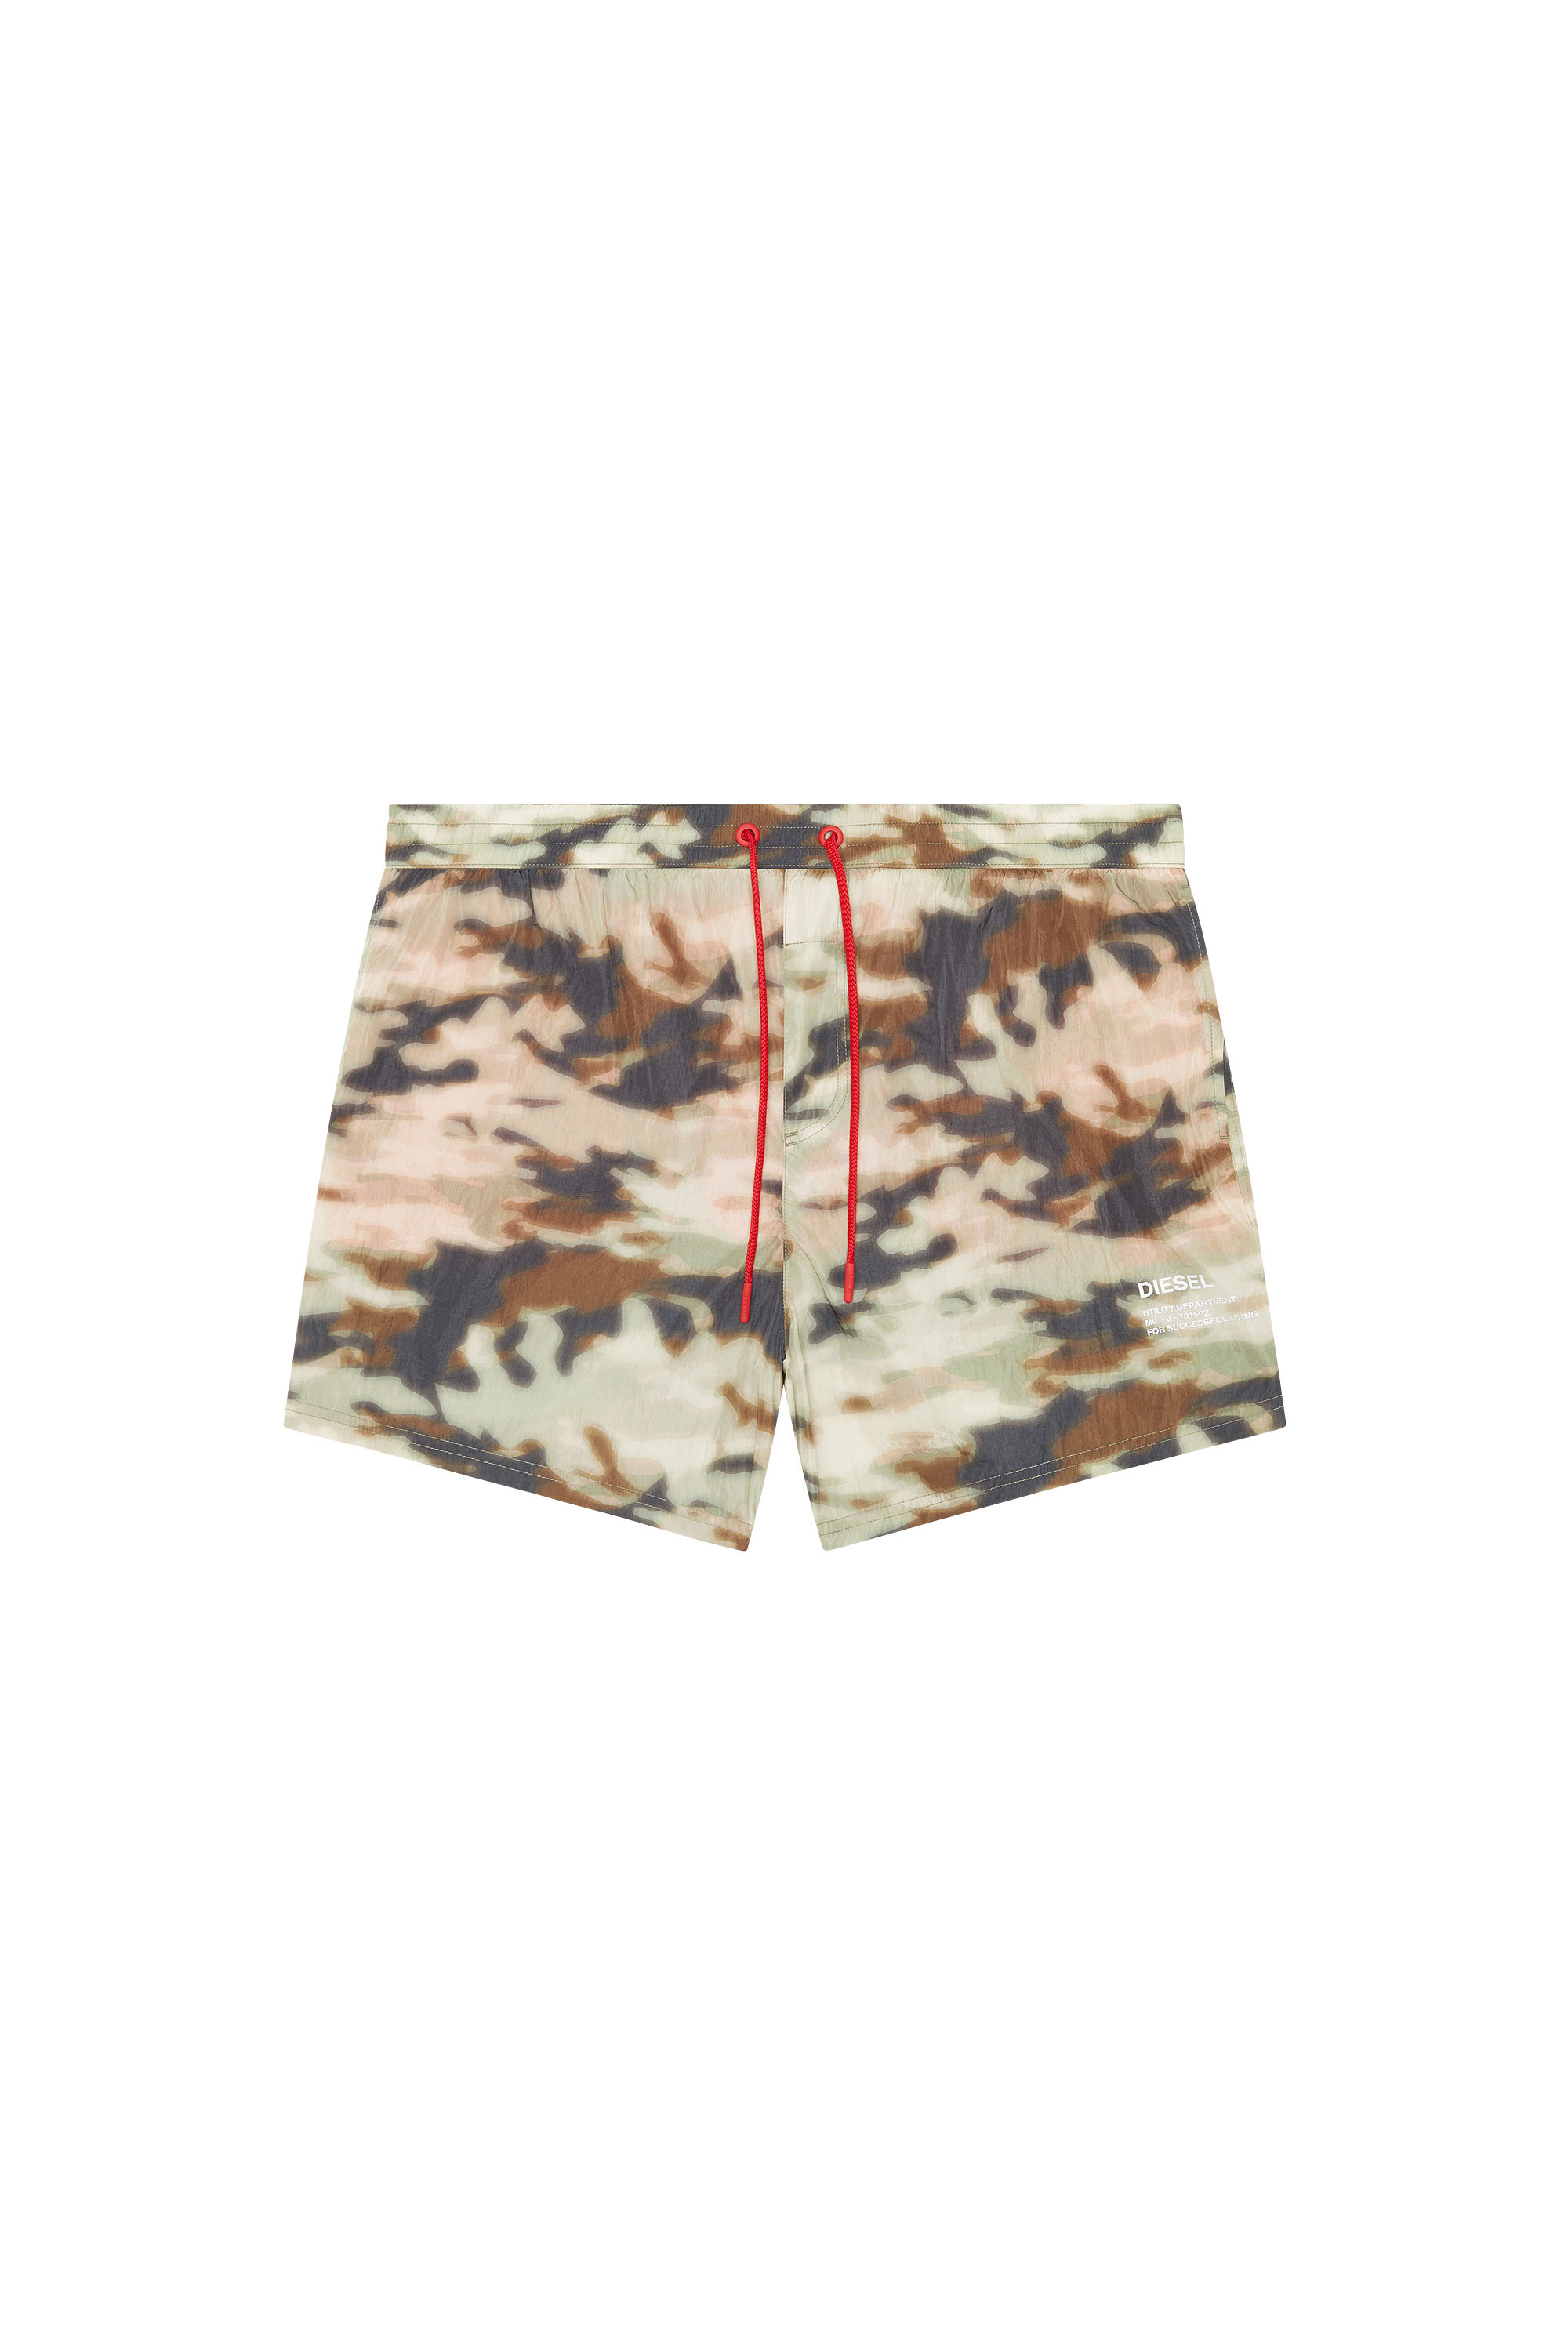 Diesel - Mittellange Bade-Shorts mit Camouflage-Print - Badeshorts - Herren - Bunt